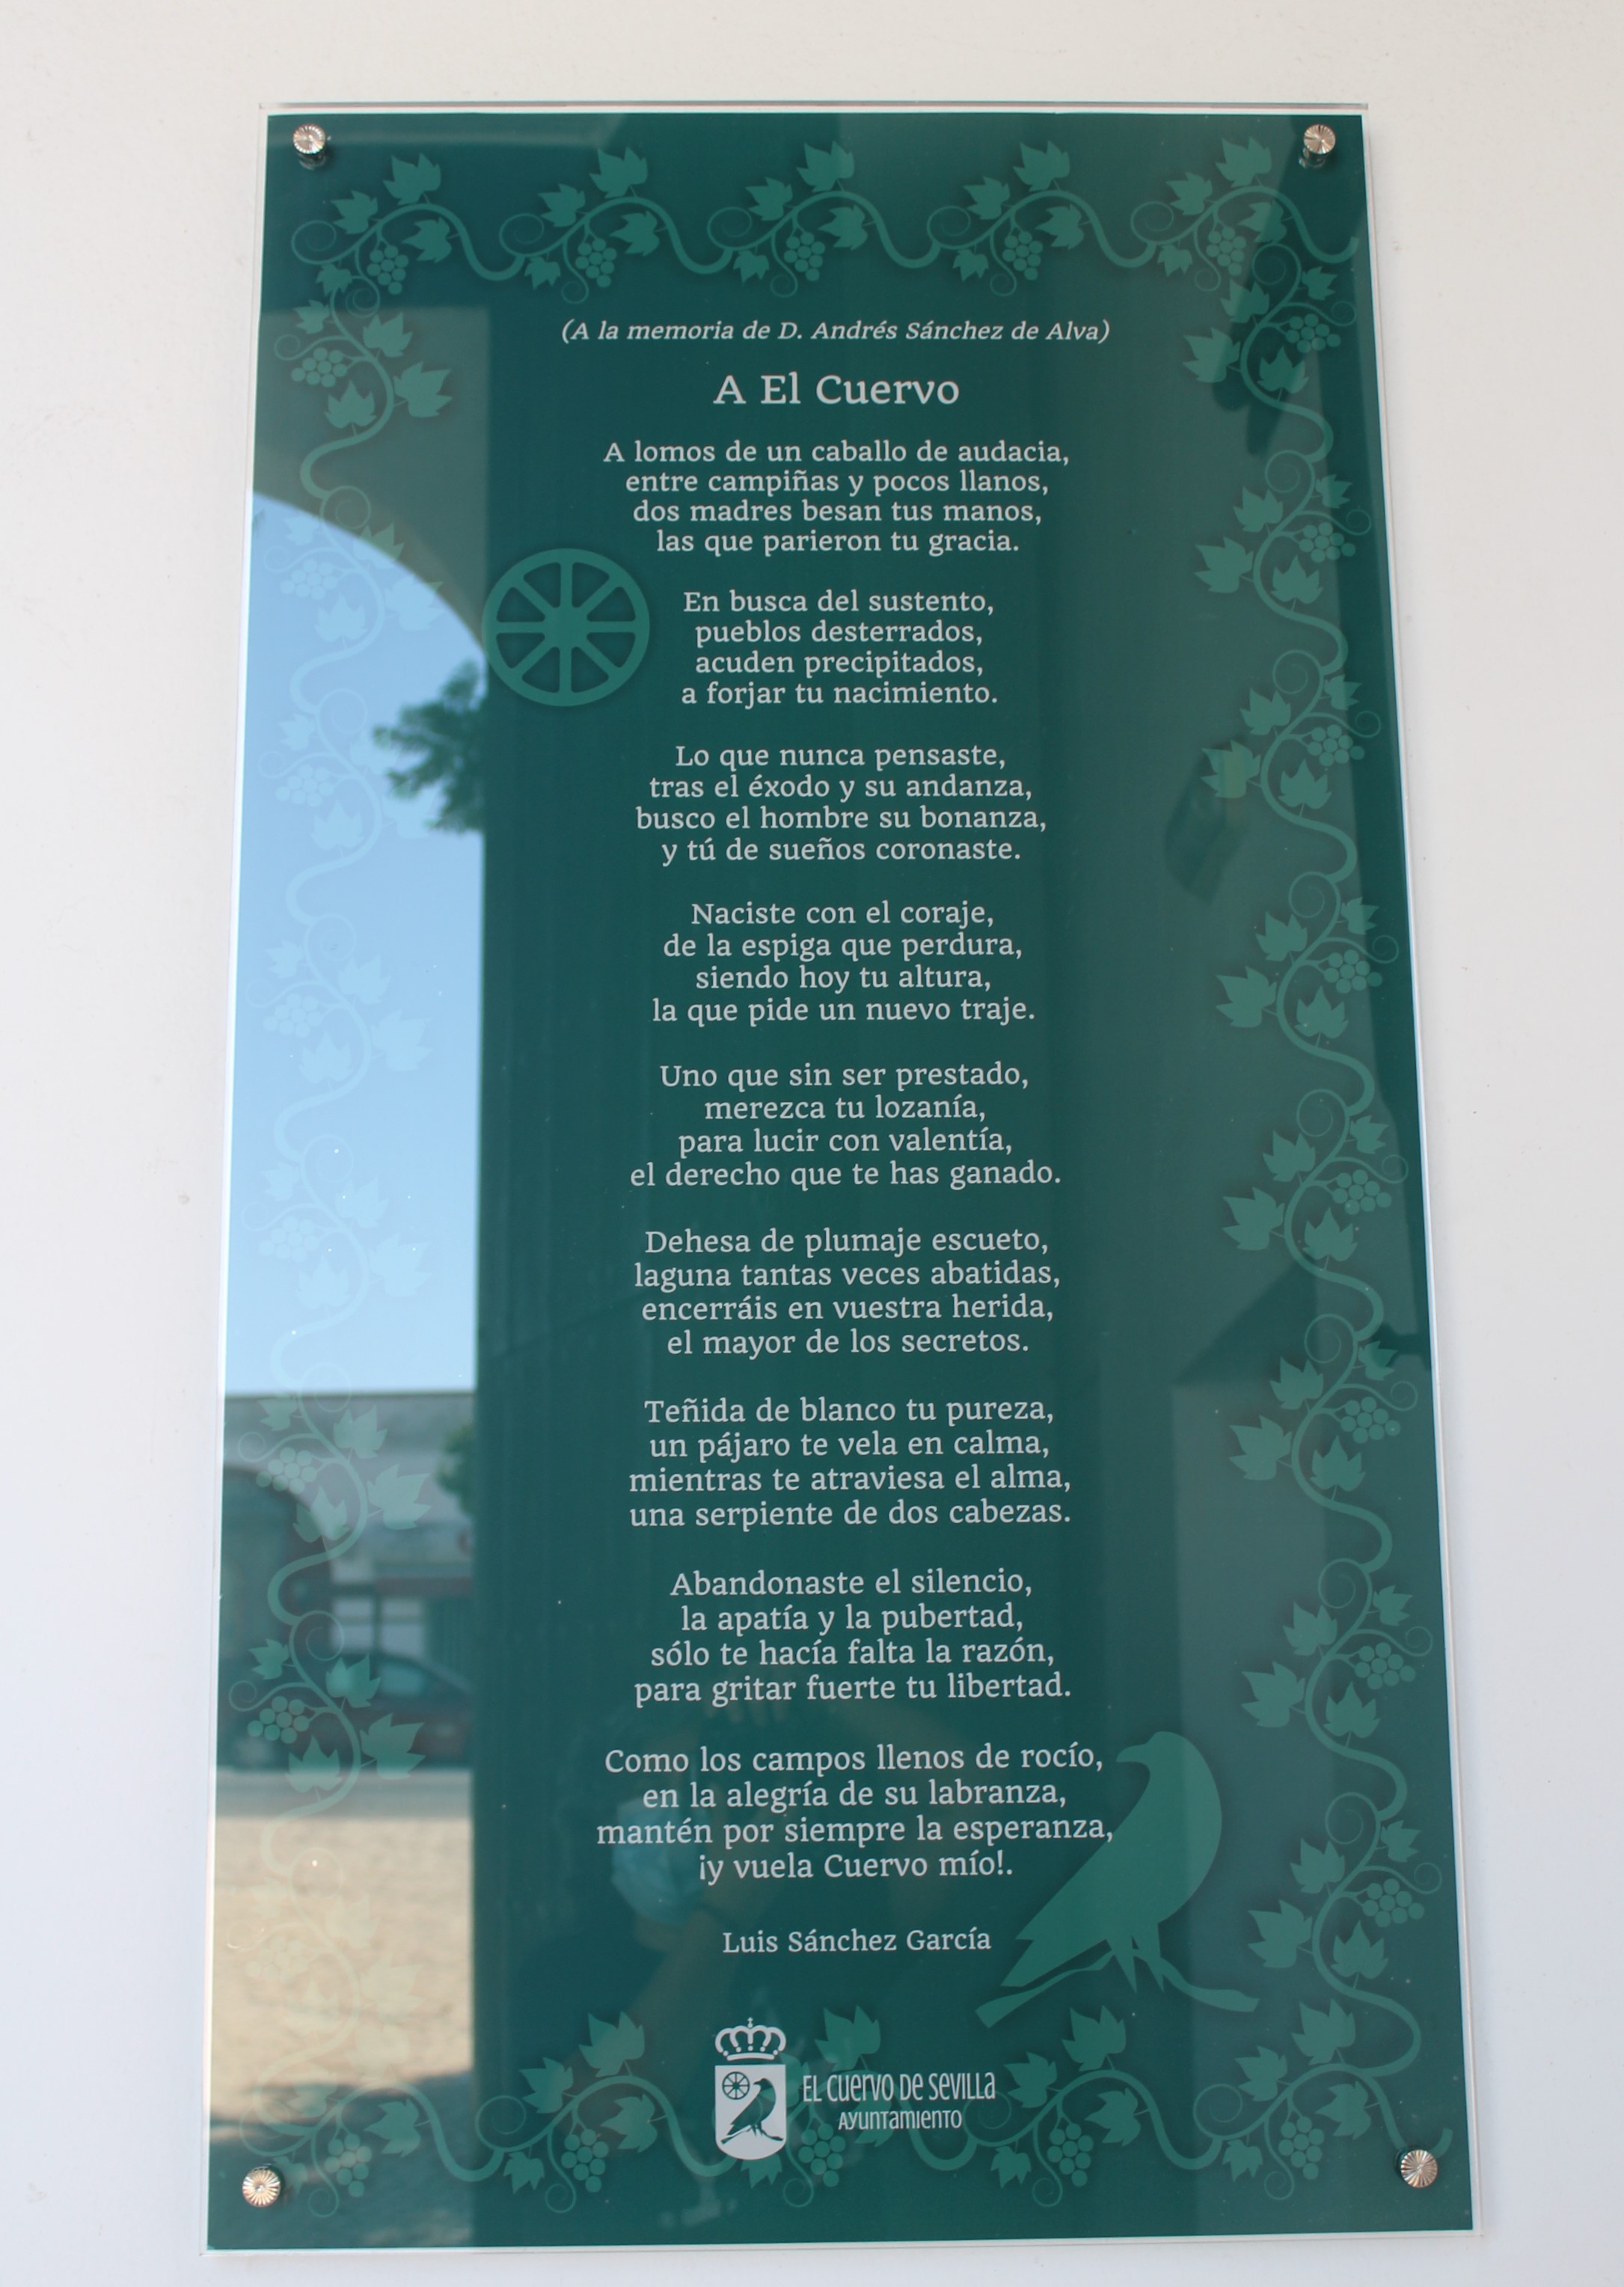 Placa poema Luis Sánchez